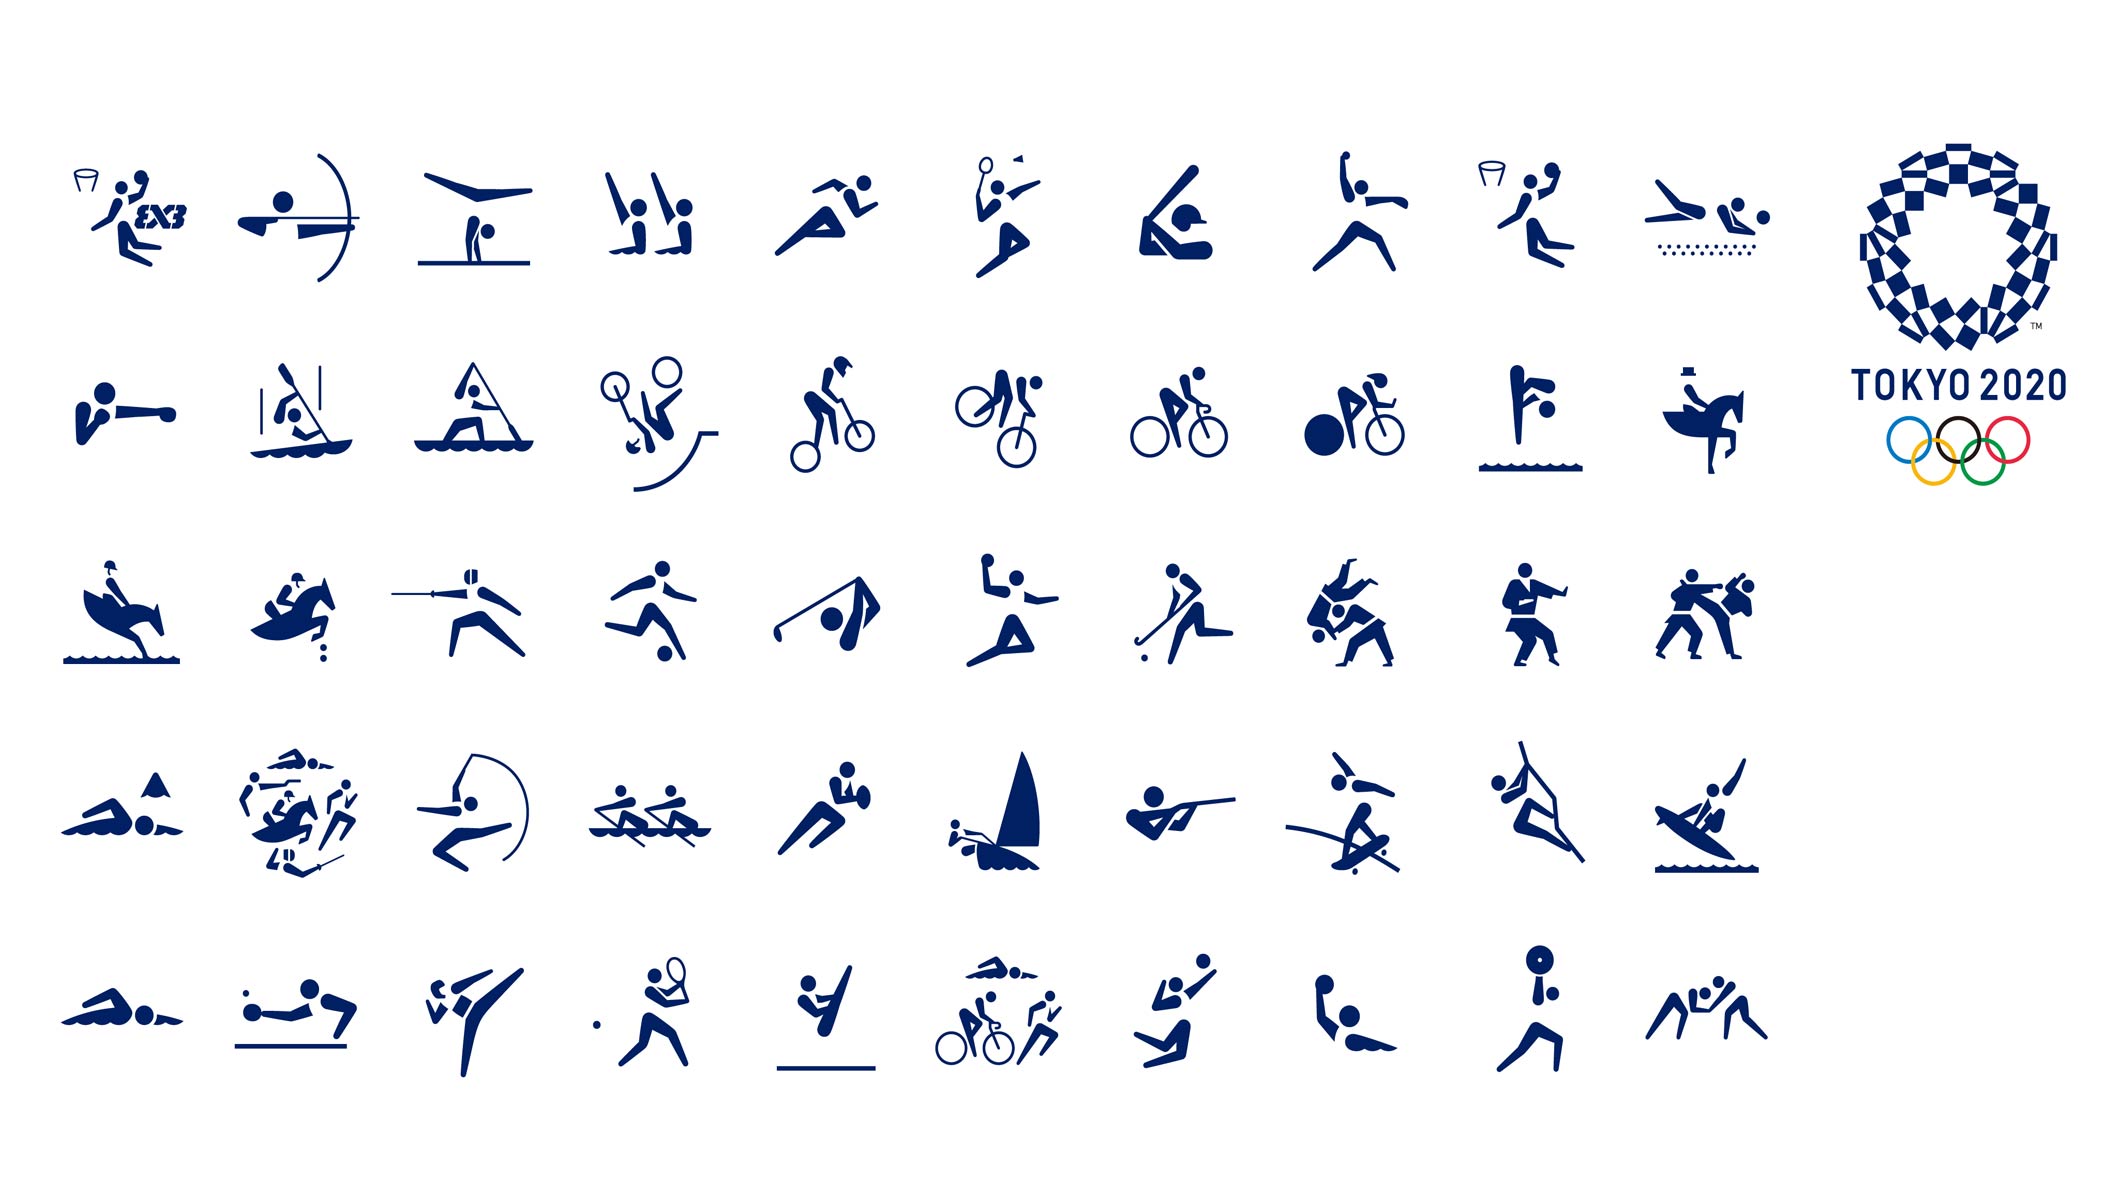 Los pictogramas de Tokio 2020 fueron diseñados por Masaaki Hiromura, éstos ayudan a identificar cada disciplina más fácil.